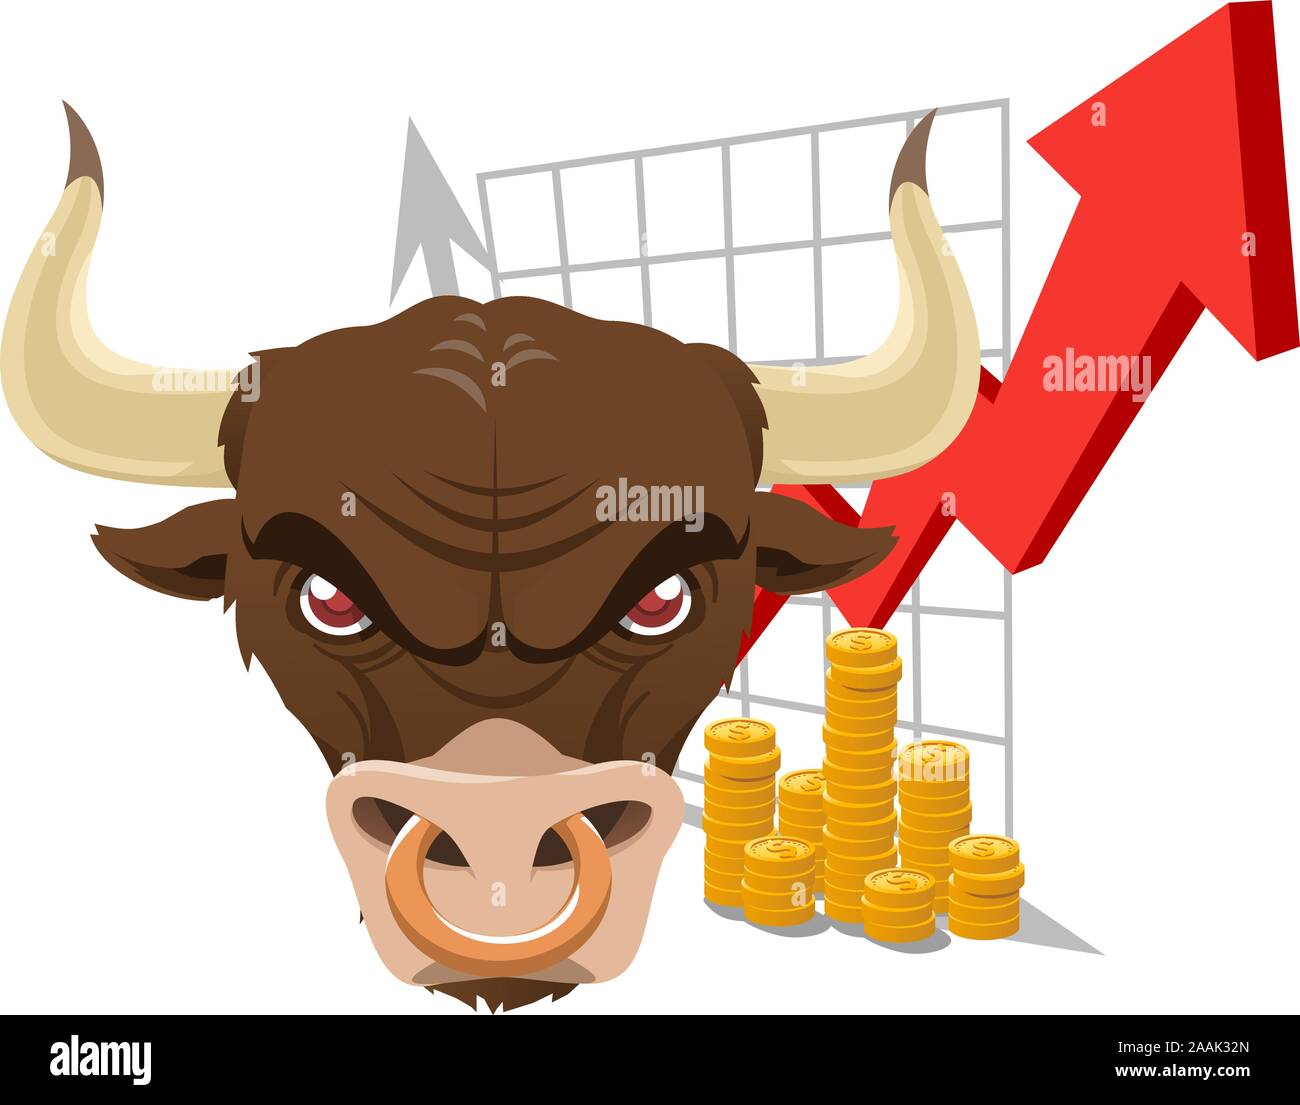 Bull finance haussière graphique d'analyse économique avec les deux flèches rouges et gris et de nombreuses pièces d'or. Vector illustration. Illustration de Vecteur